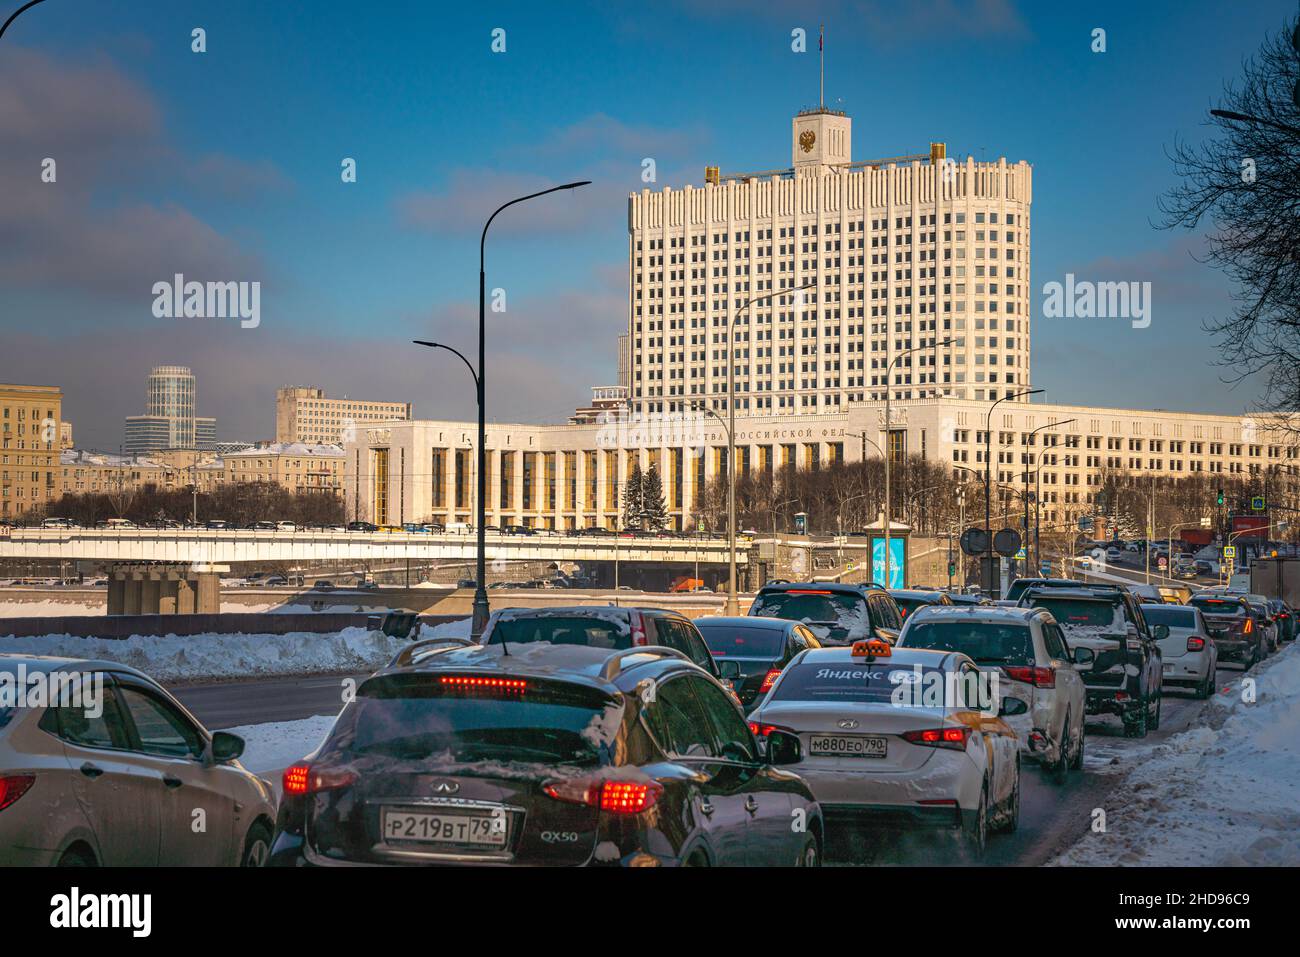 Moskau, Russland - 15. Februar 2020: Stau am Smolenskaja-Damm vor dem Gebäude der russischen Regierung an einem schönen Wintertag Stockfoto